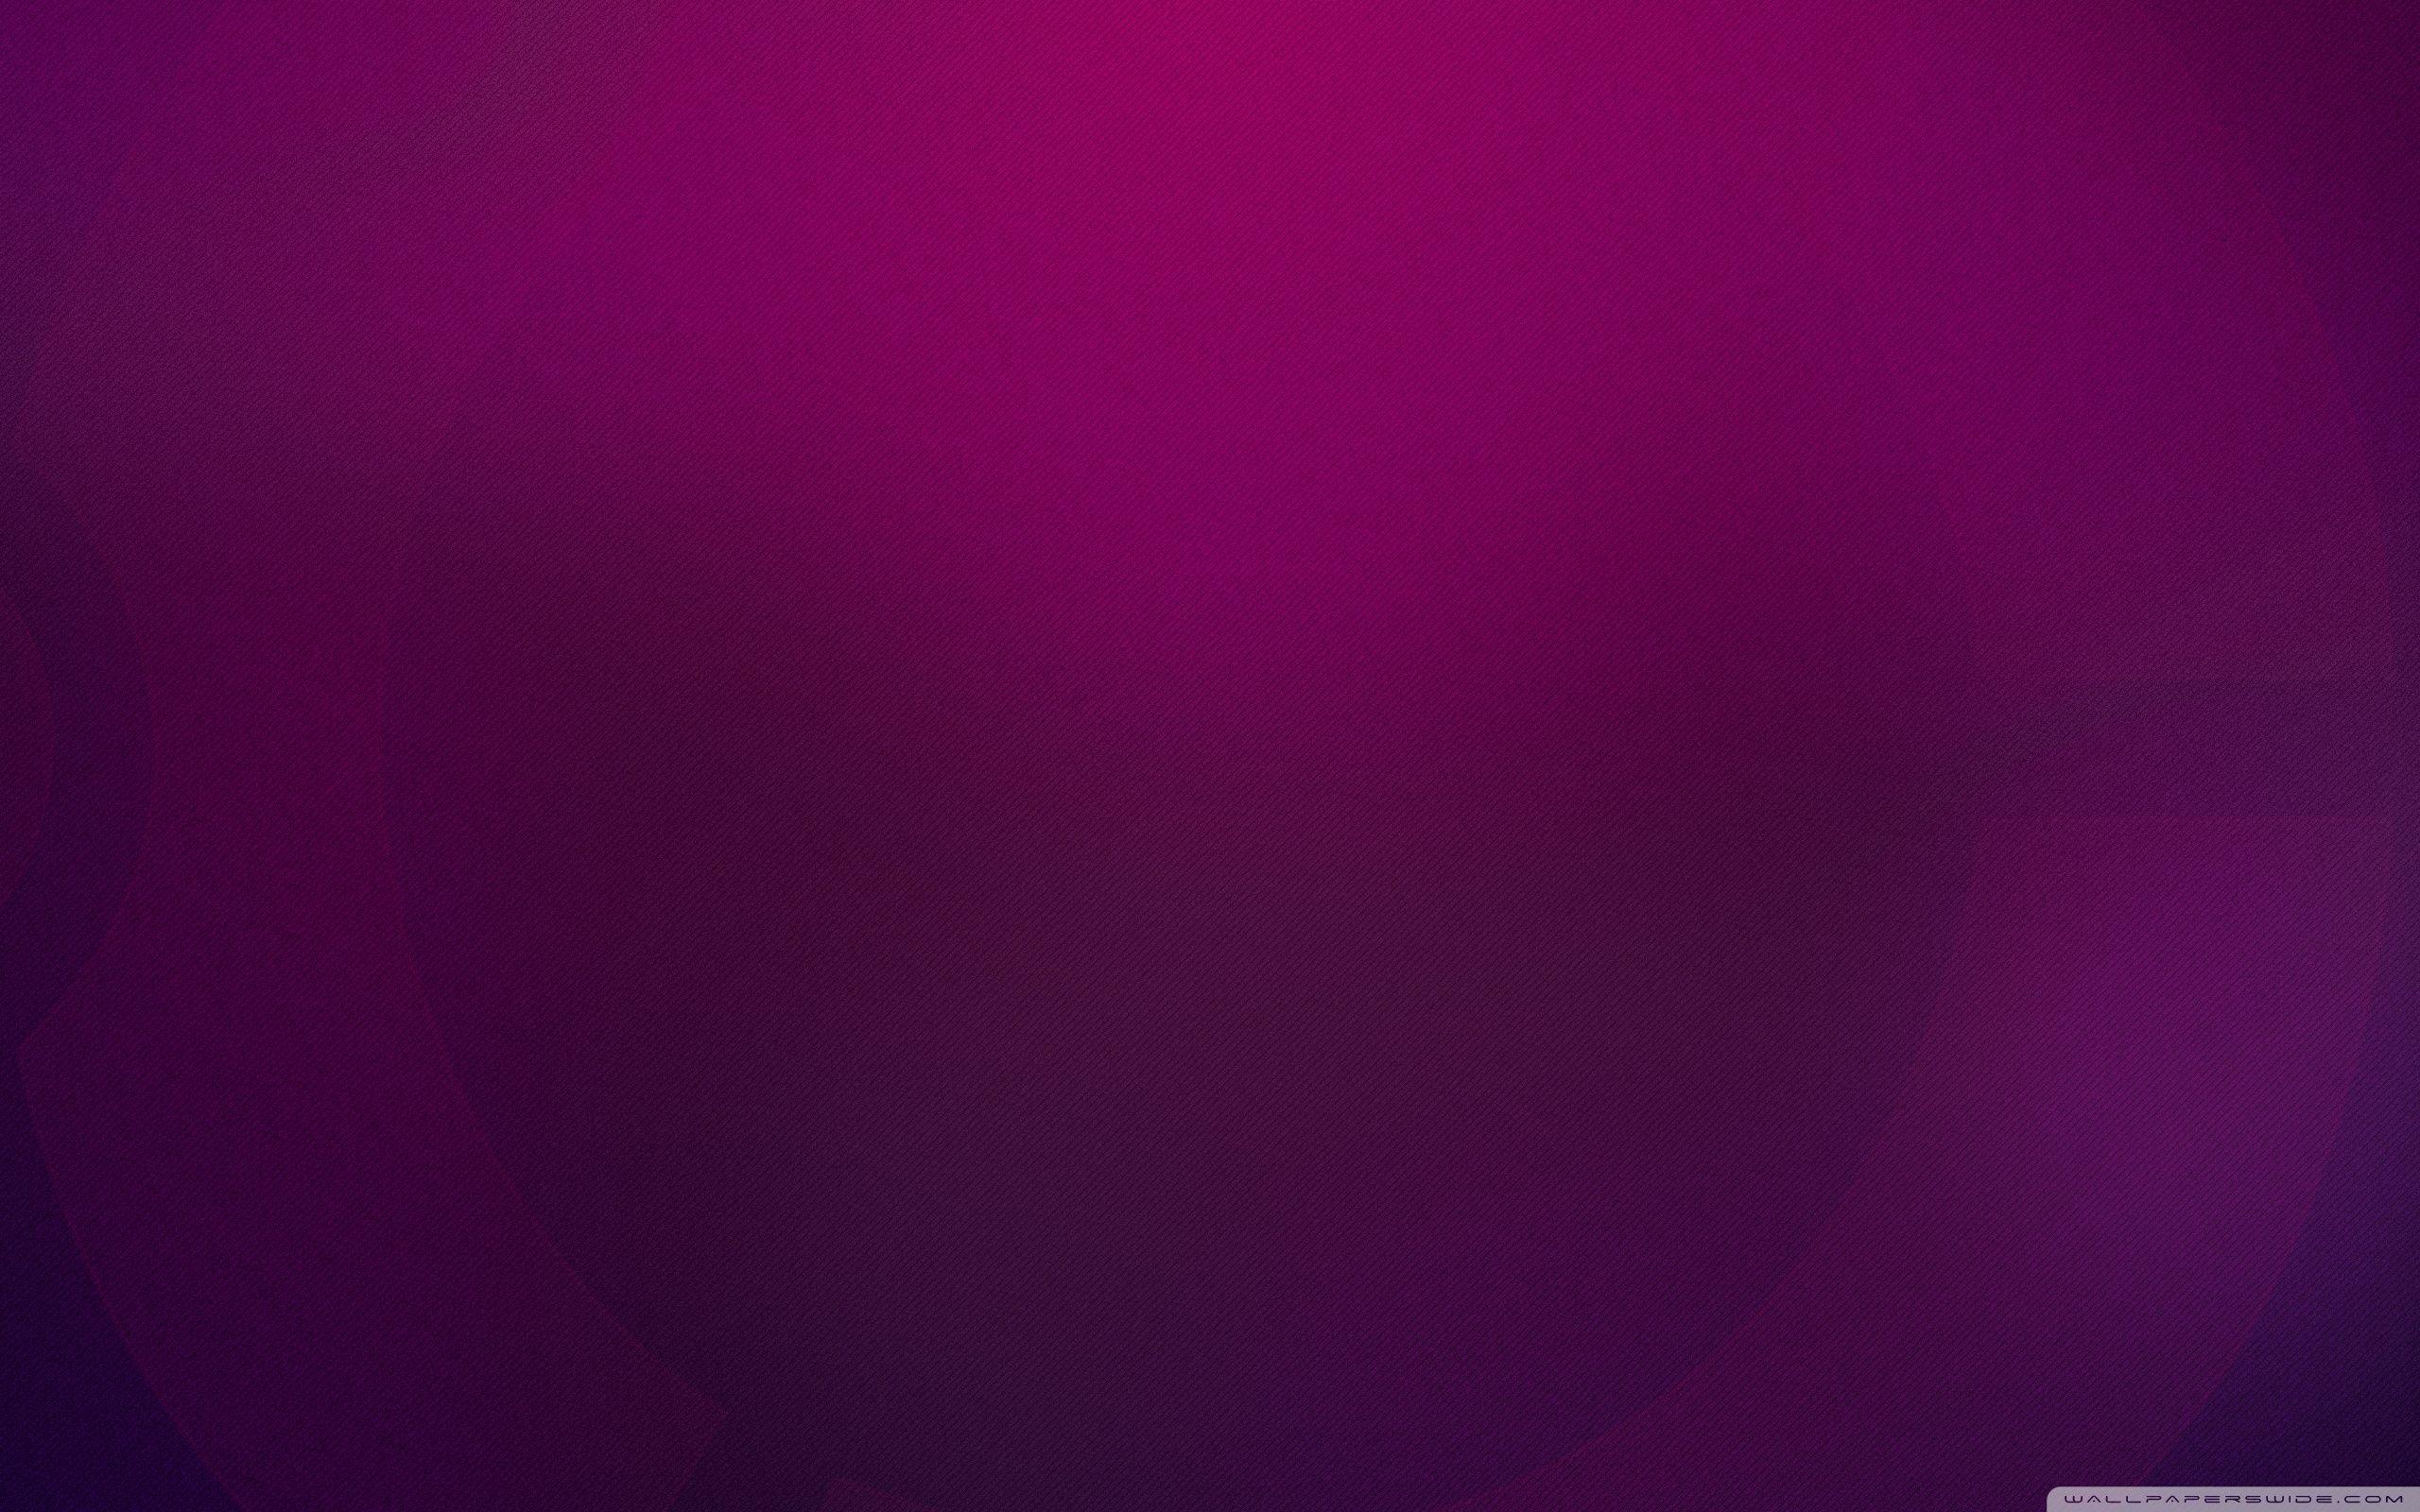 Solid Purple 4K Wallpaper